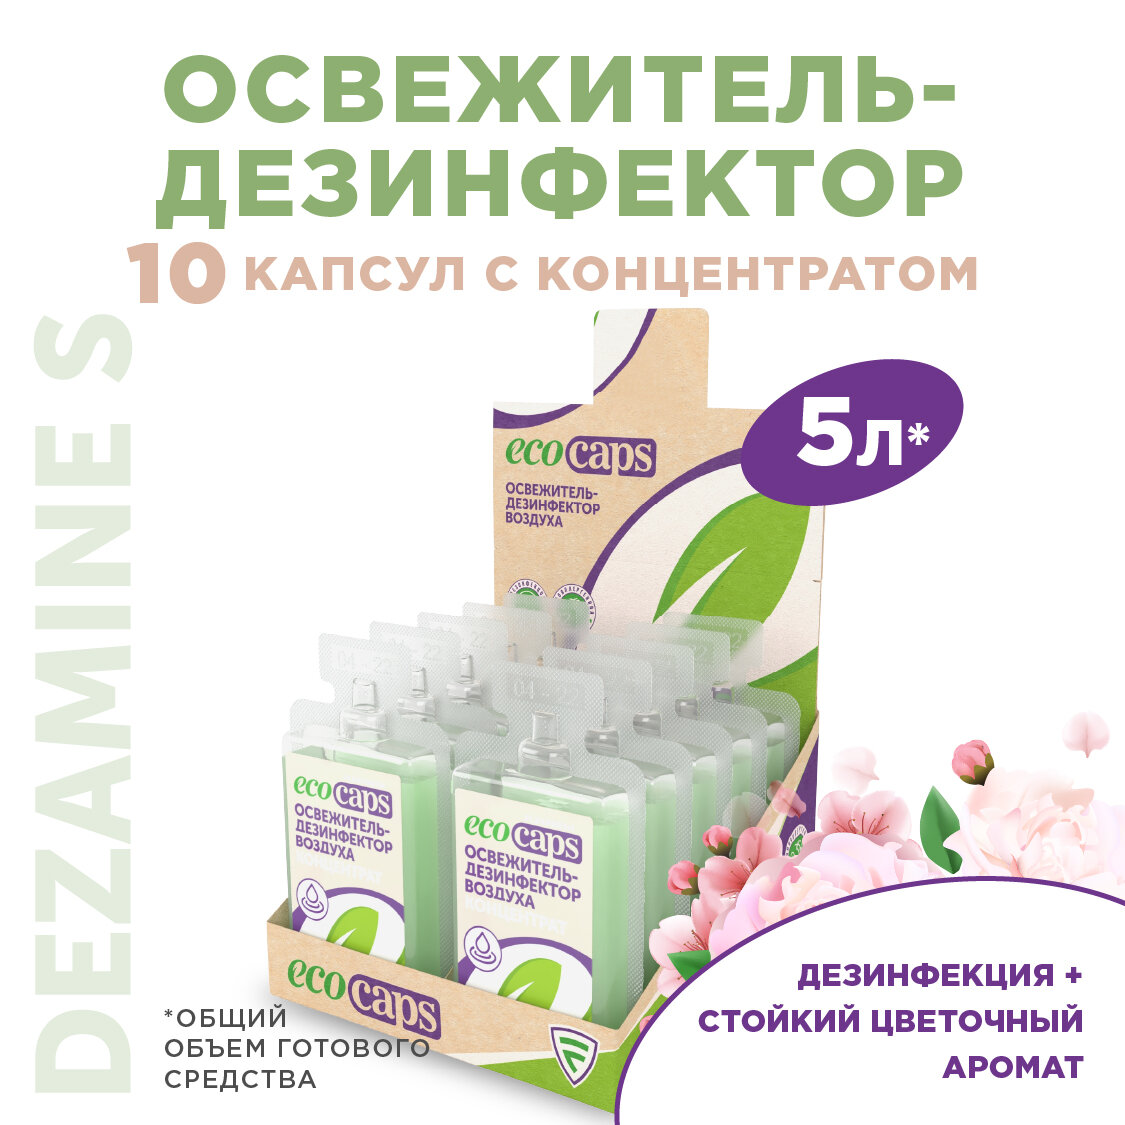 Дезинфицирующее средство для воздуха и поверхностей, антисептик Dezamine S, EcoCaps (концентрат в капсулах), 10 шт по 50 мл, аромат Цветочный